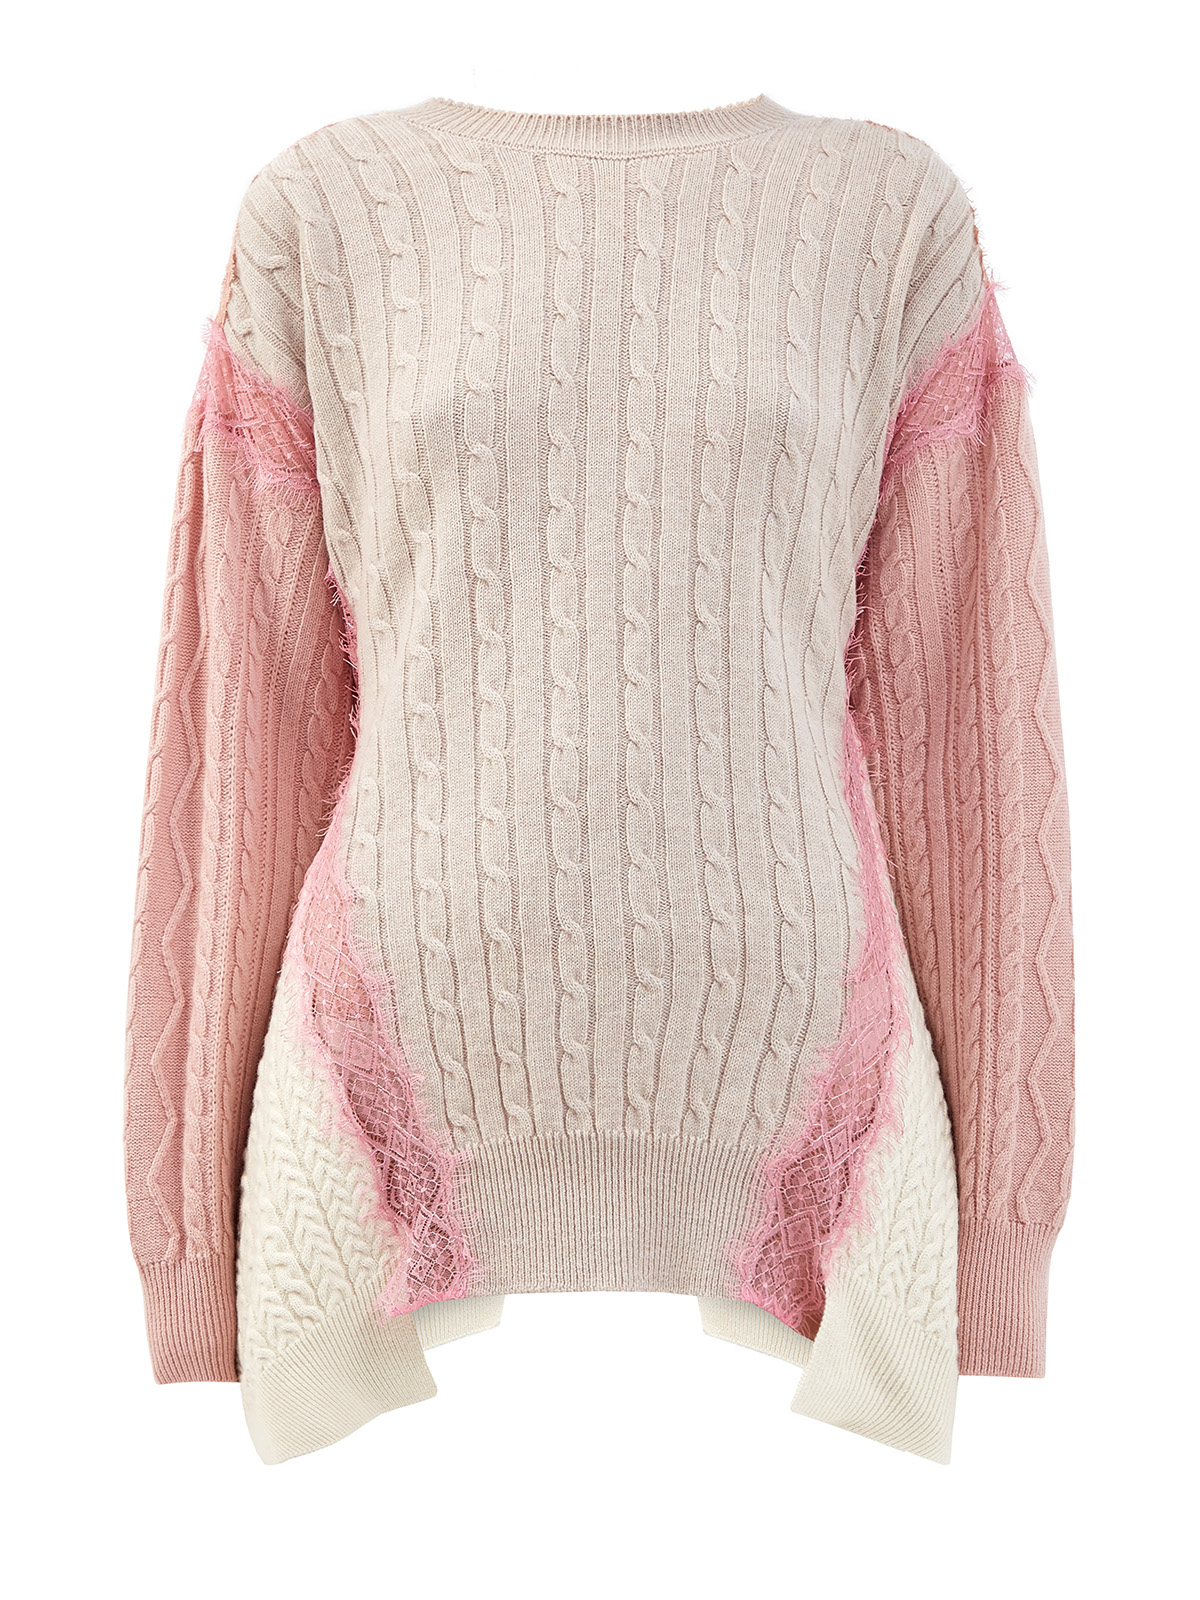 Шерстяной пуловер с объемным принтом и кружевом STELLA McCARTNEY, цвет розовый, размер 38;36 - фото 1